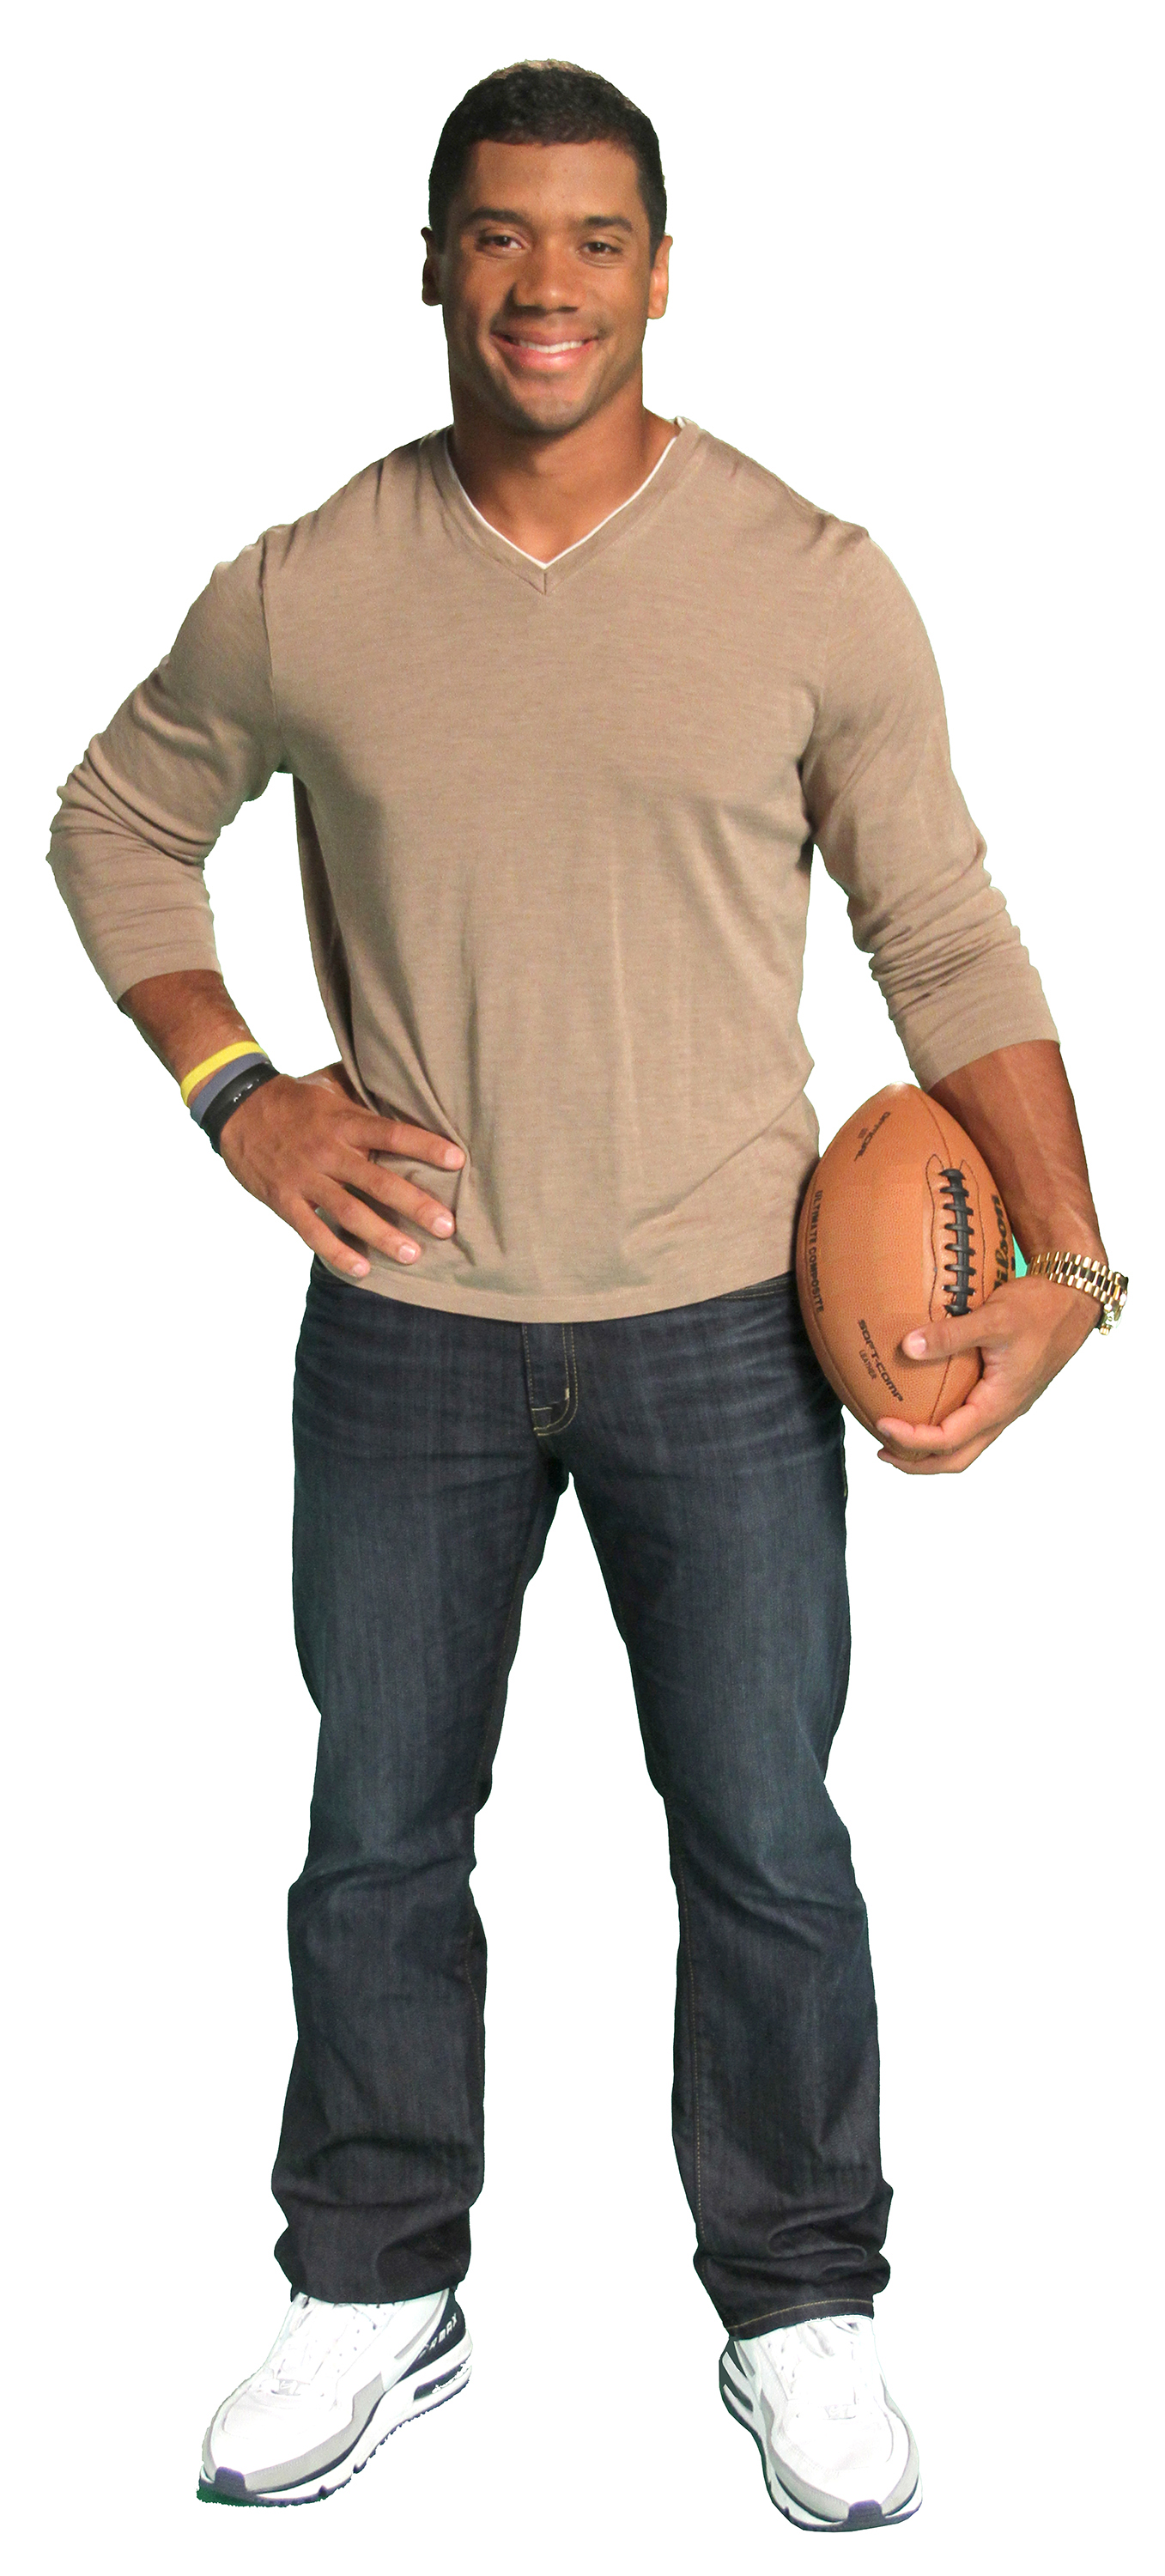 Seattle Seahawks Quarterback, Russell Wilson